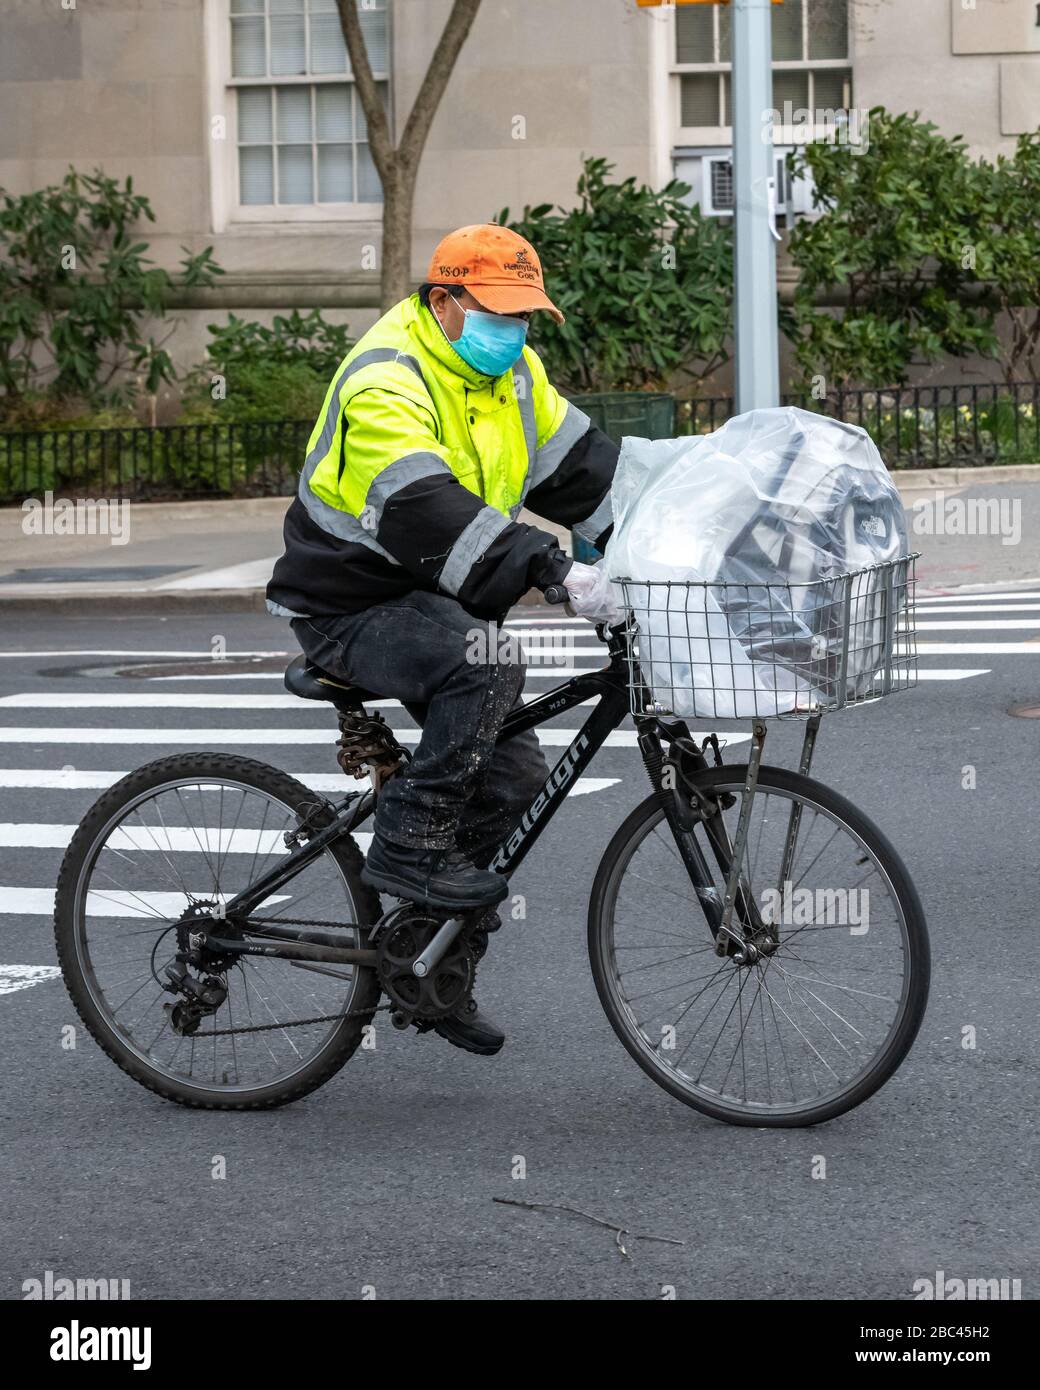 New York, USA. April 2020. Ein Liefermann trägt eine Gesichtsmaske, als er mit seinem Fahrrad in New York City fährt. Heute sagte die Regierung, dass Newyorkers ihre Gesichter bedecken sollten, wenn sie nach draußen gehen, um eine Ausbreitung des Coronavirus zu verhindern. Kredit: Enrique Shore/Alamy Live News Stockfoto